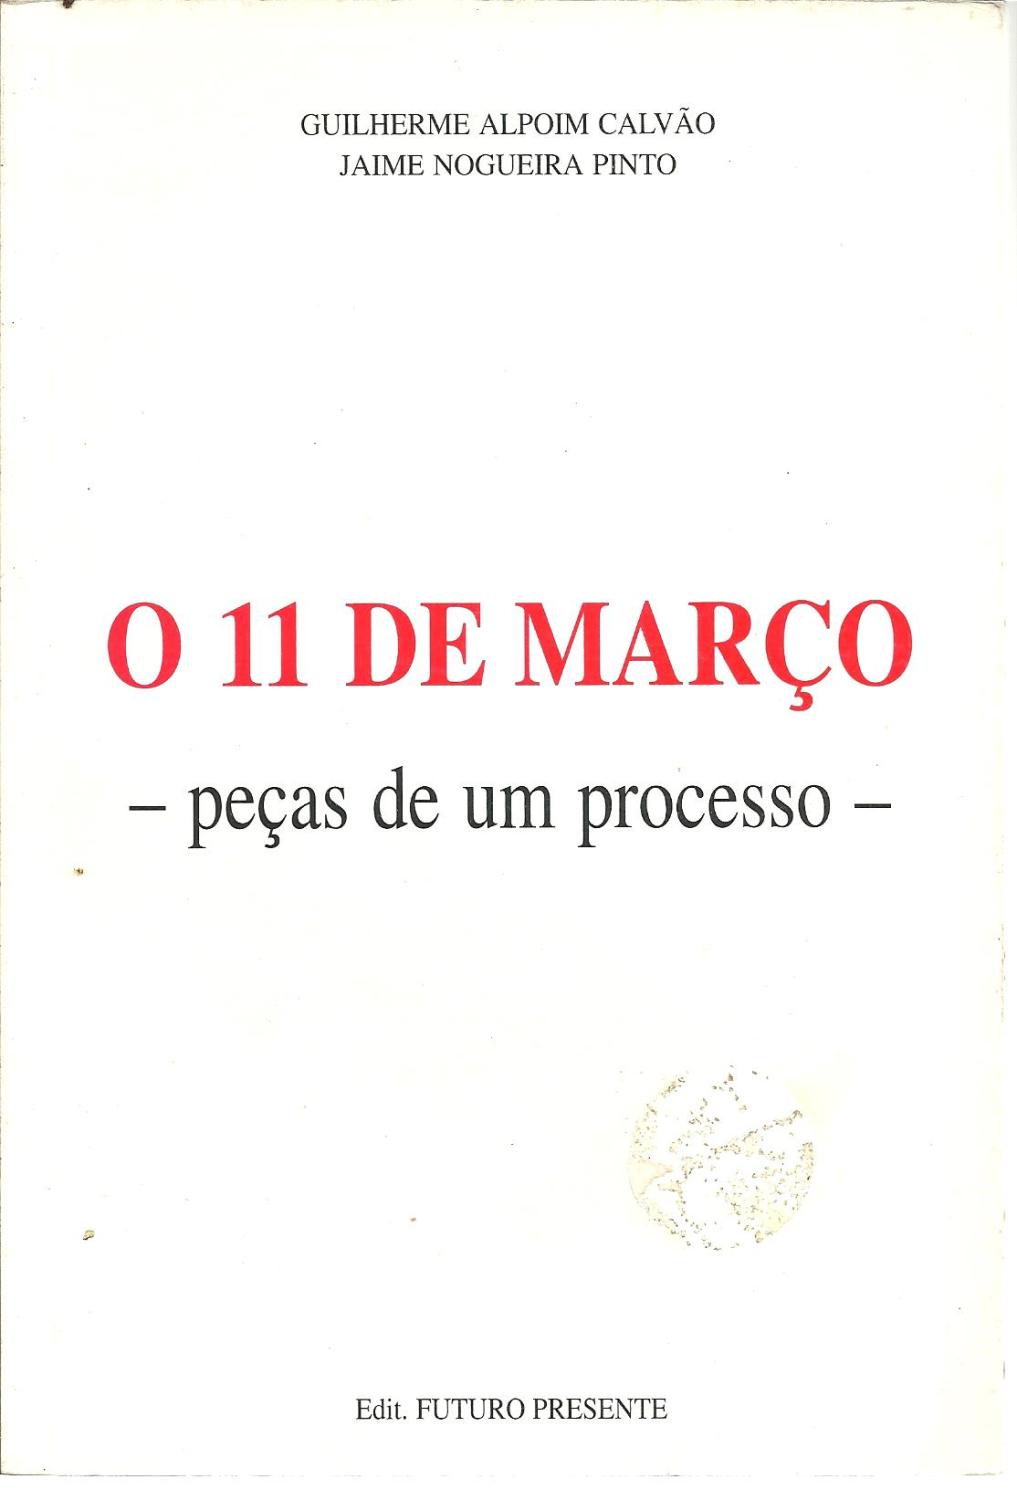 O 11 DE MARÇO - PEÇAS DE UM PROCESSO - CALVÃO & PINTO, Guilherme Alpoim - Jaime Nogueira